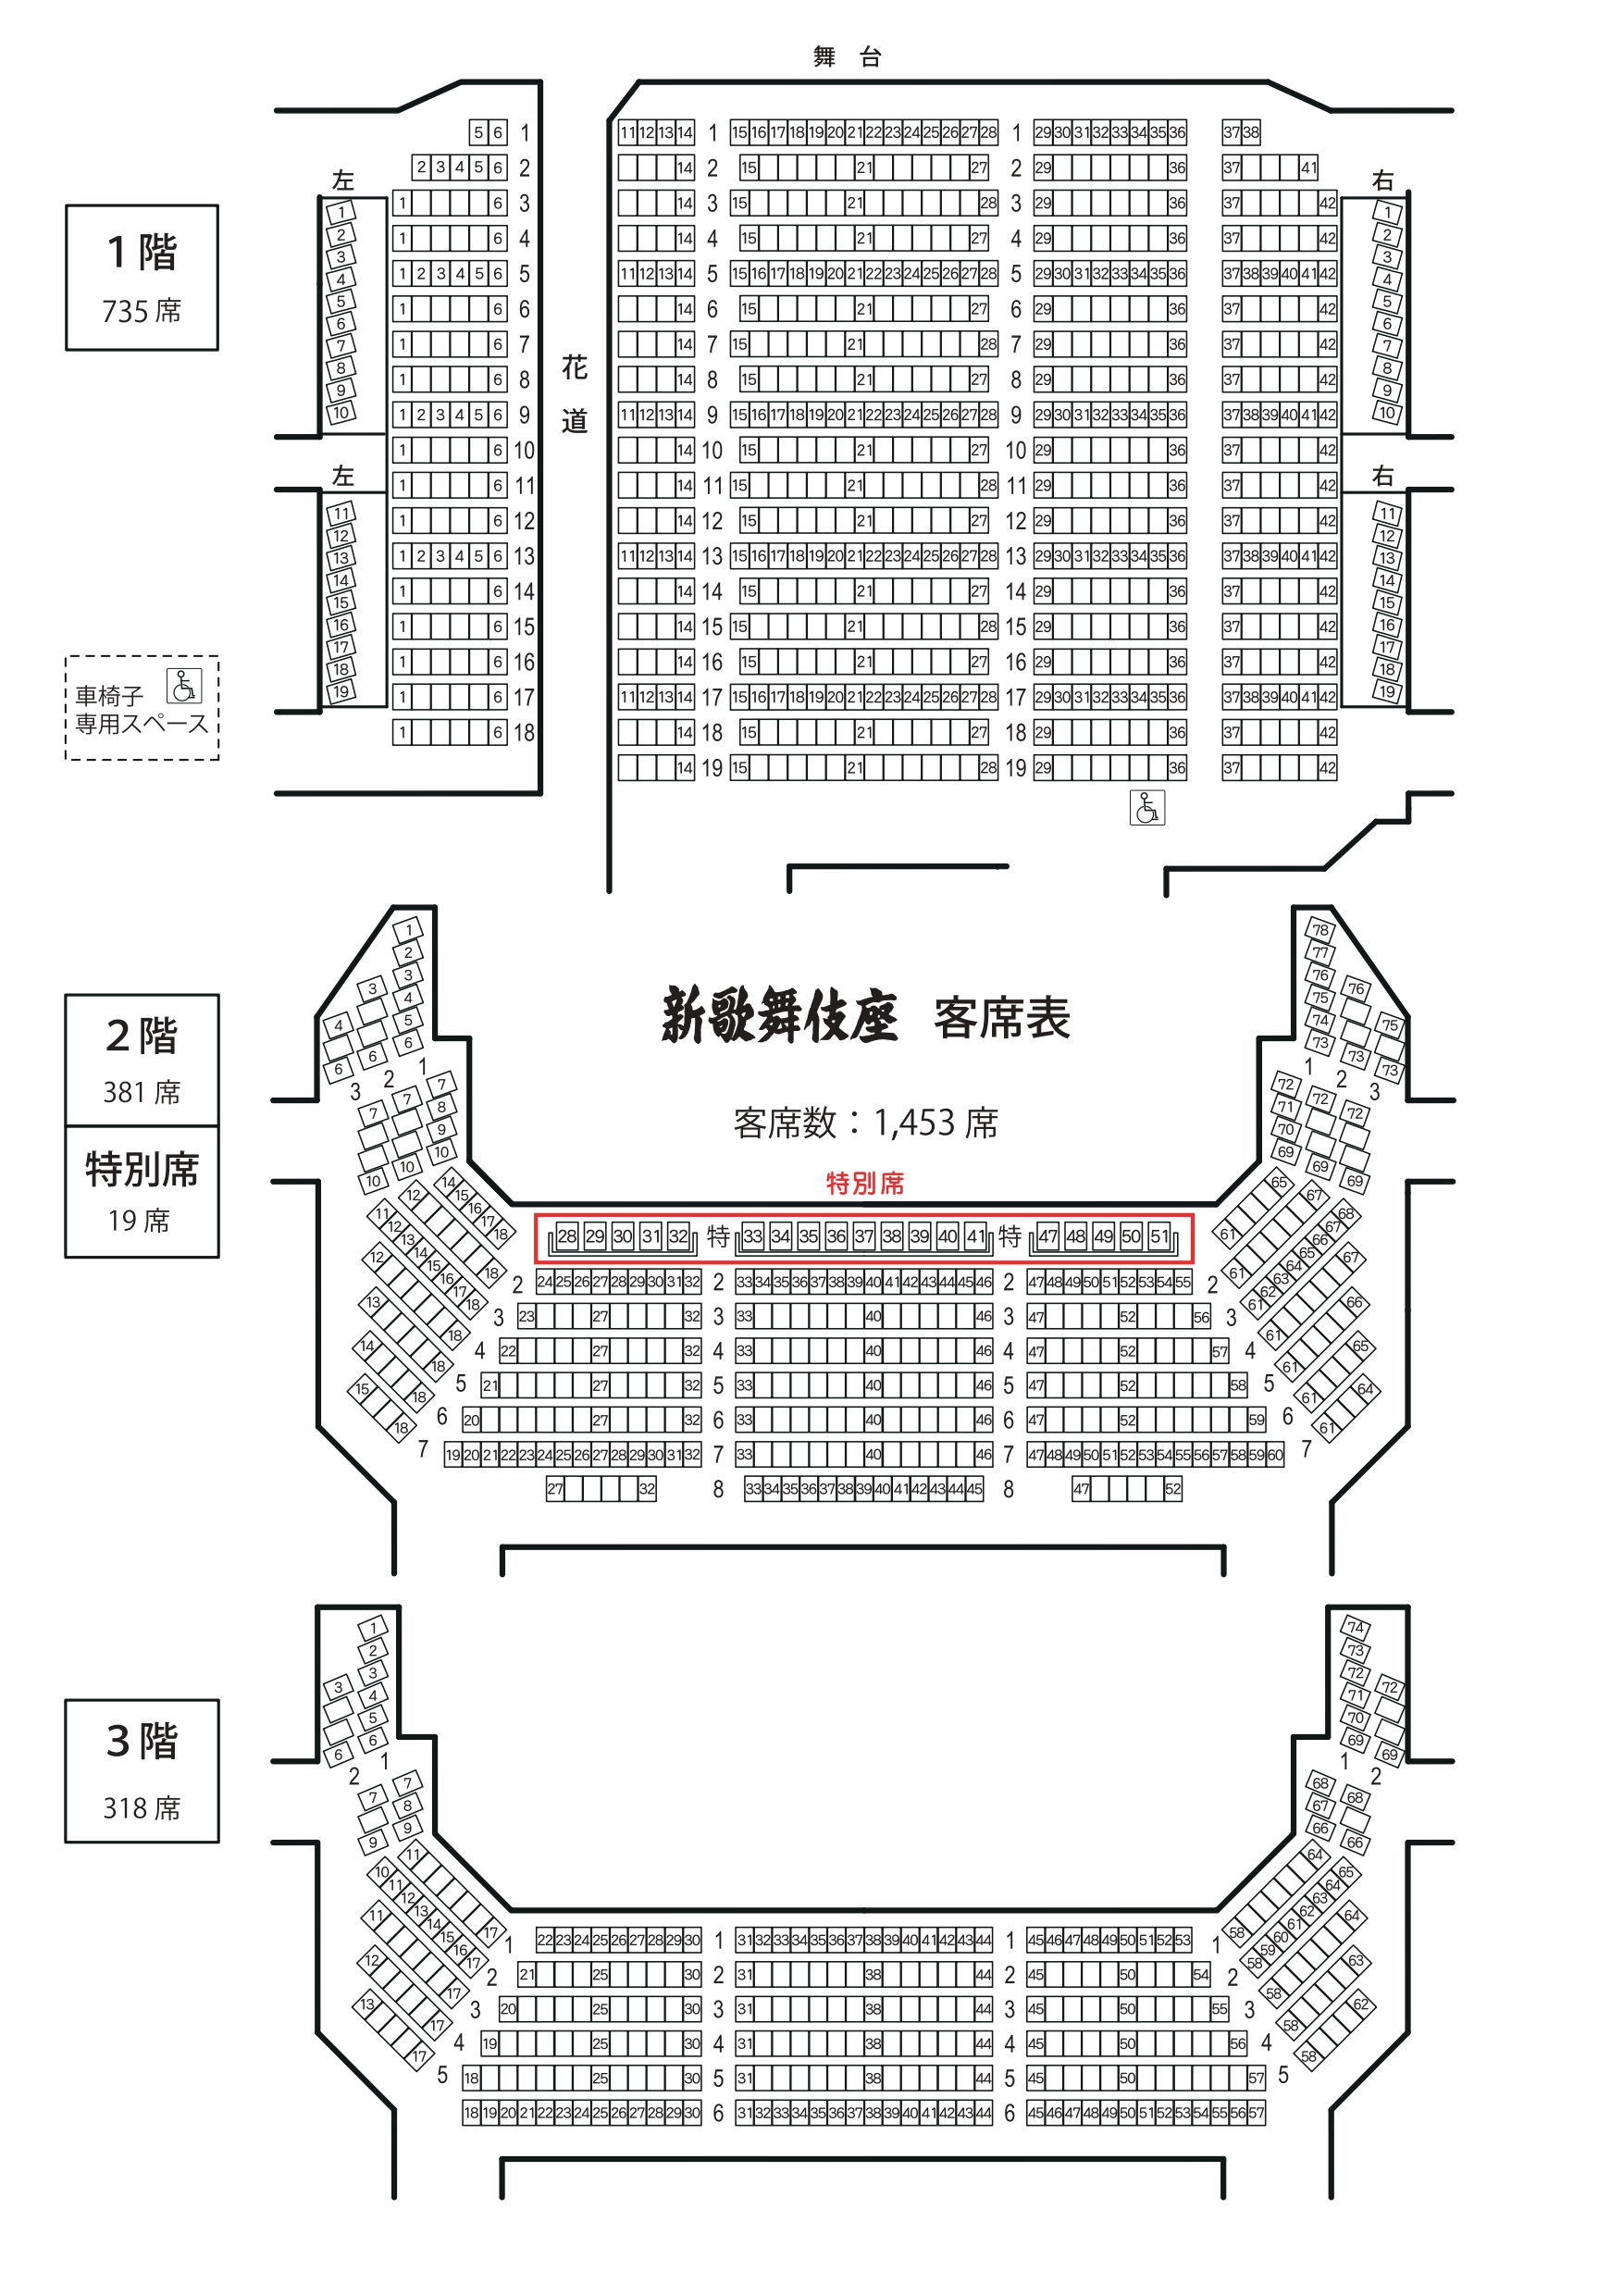 大阪新歌舞伎座 座席からの見え方を徹底解説 階別に見え方をまとめてみた 座席ウォッチャー